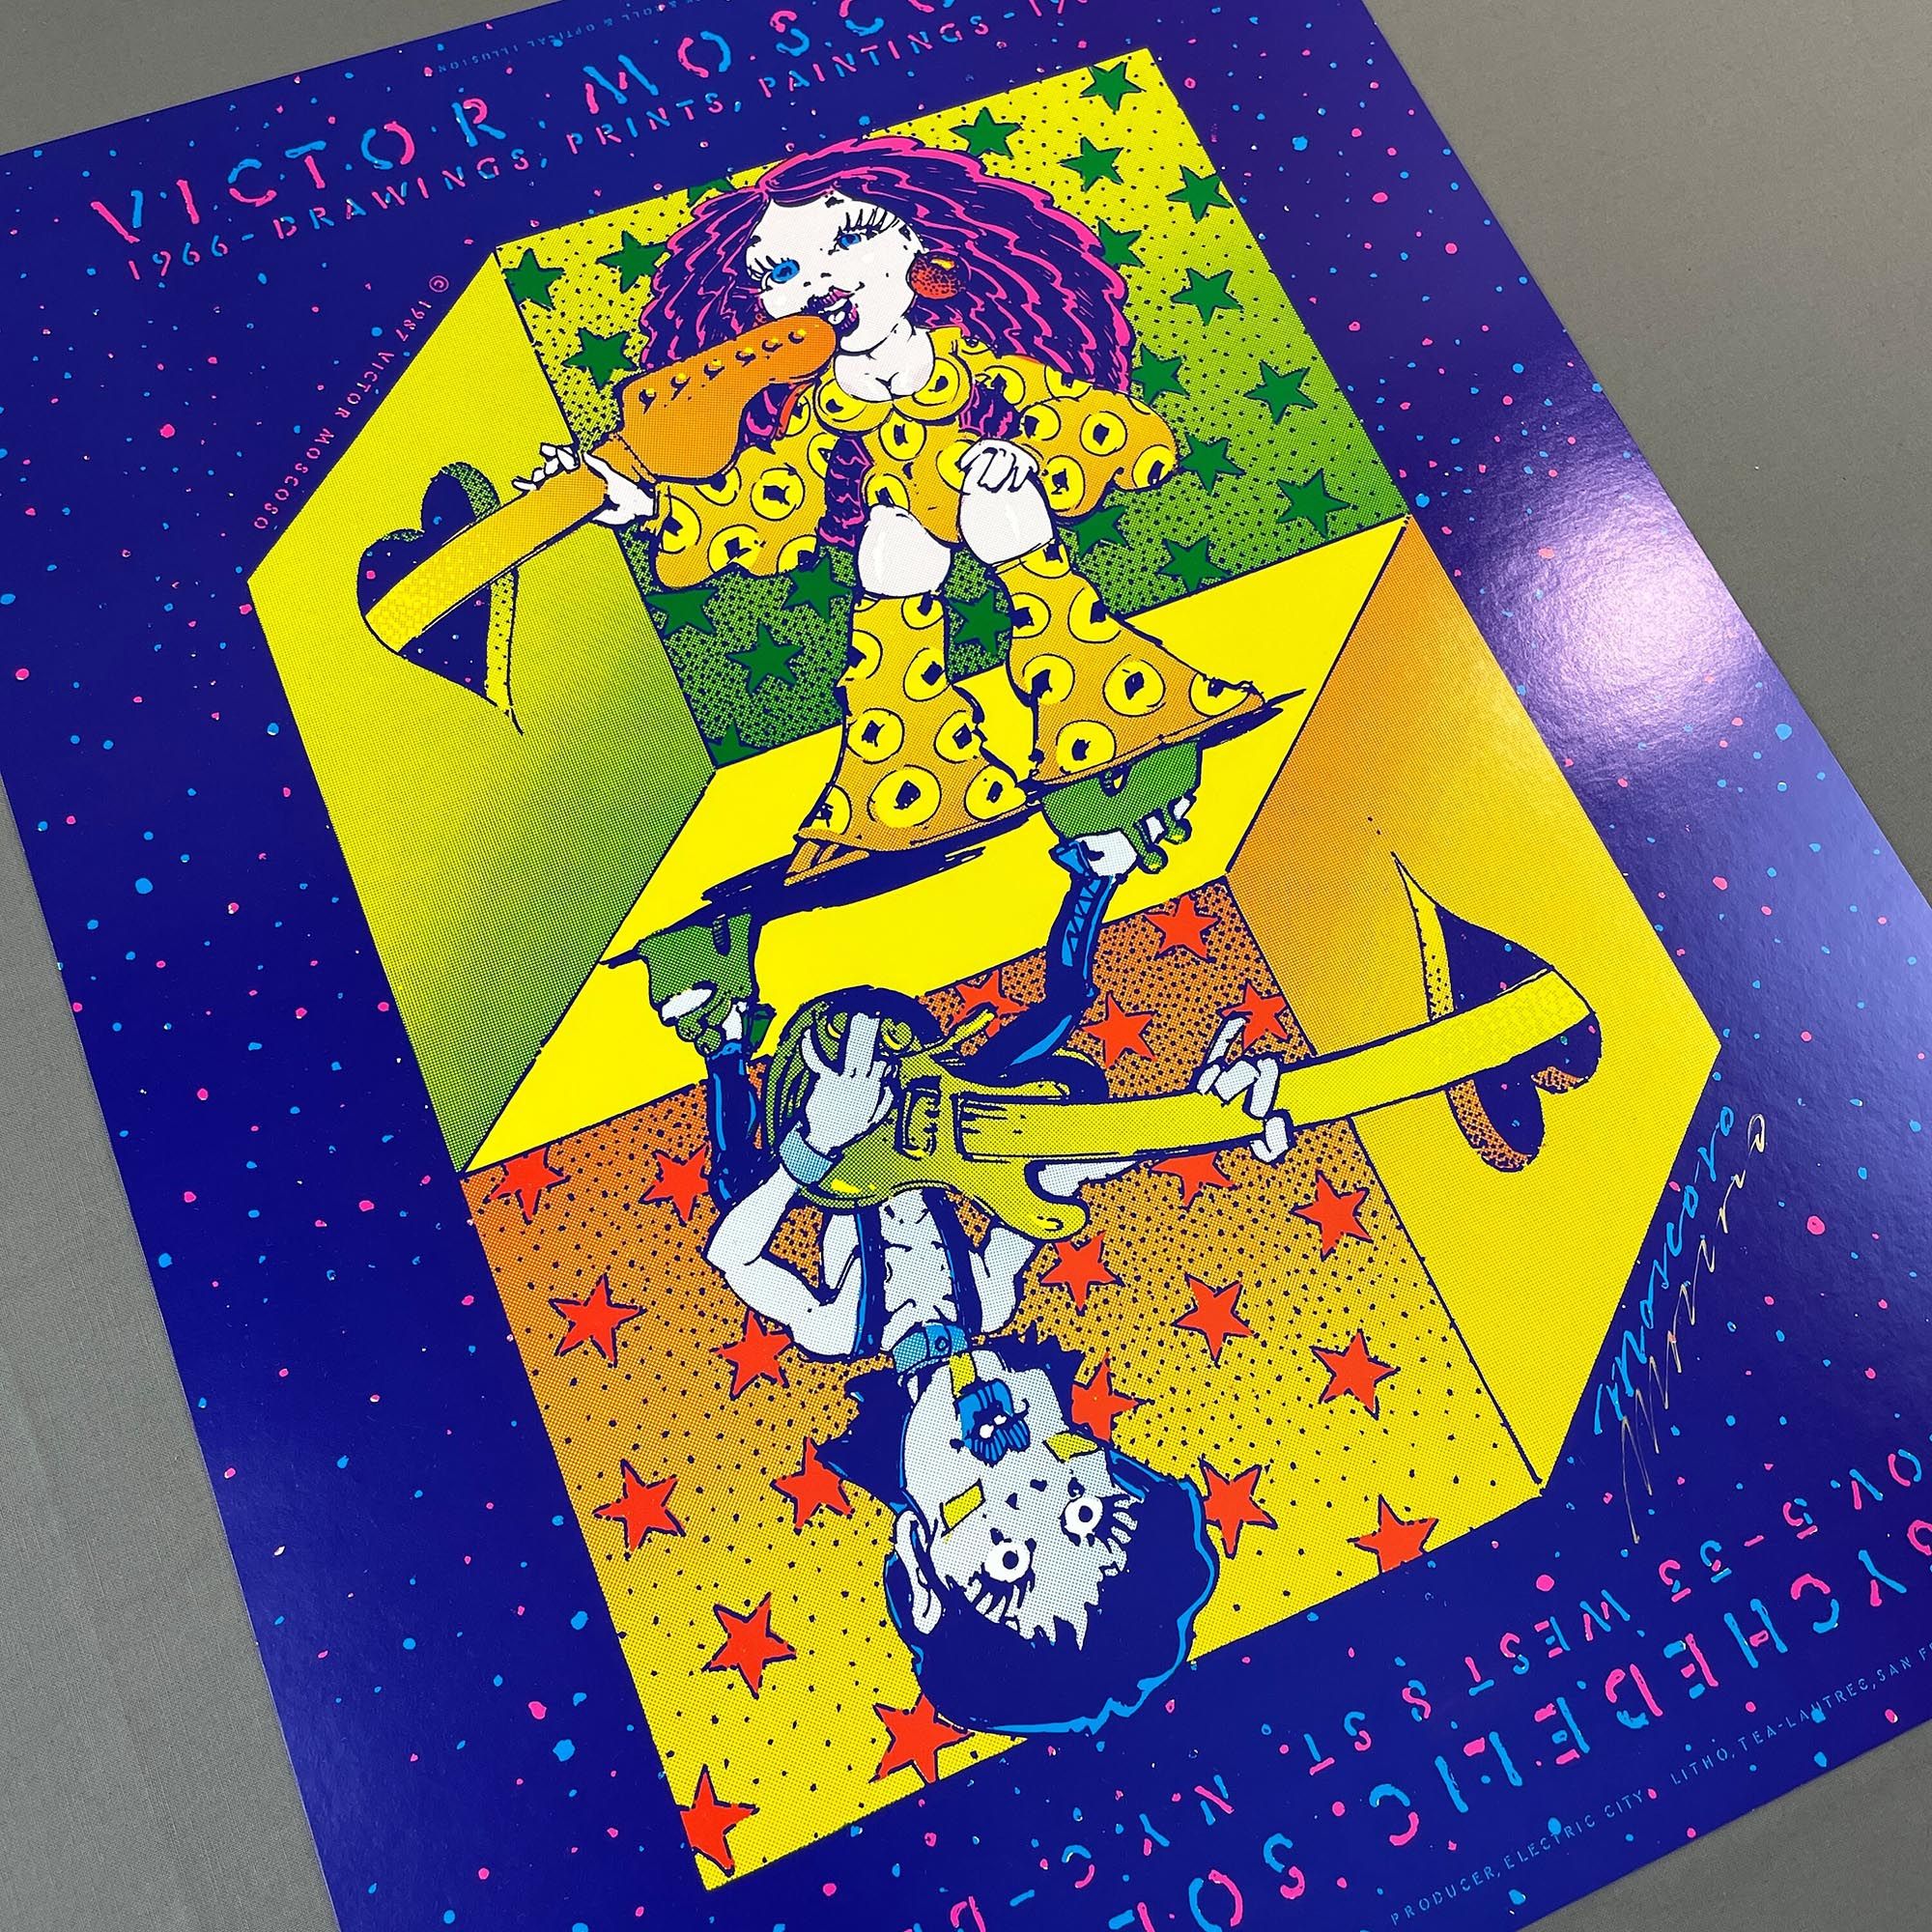 Algunas de las obras, carteles de conciertos y portadas de discos realizadas por Víctor Moscoso